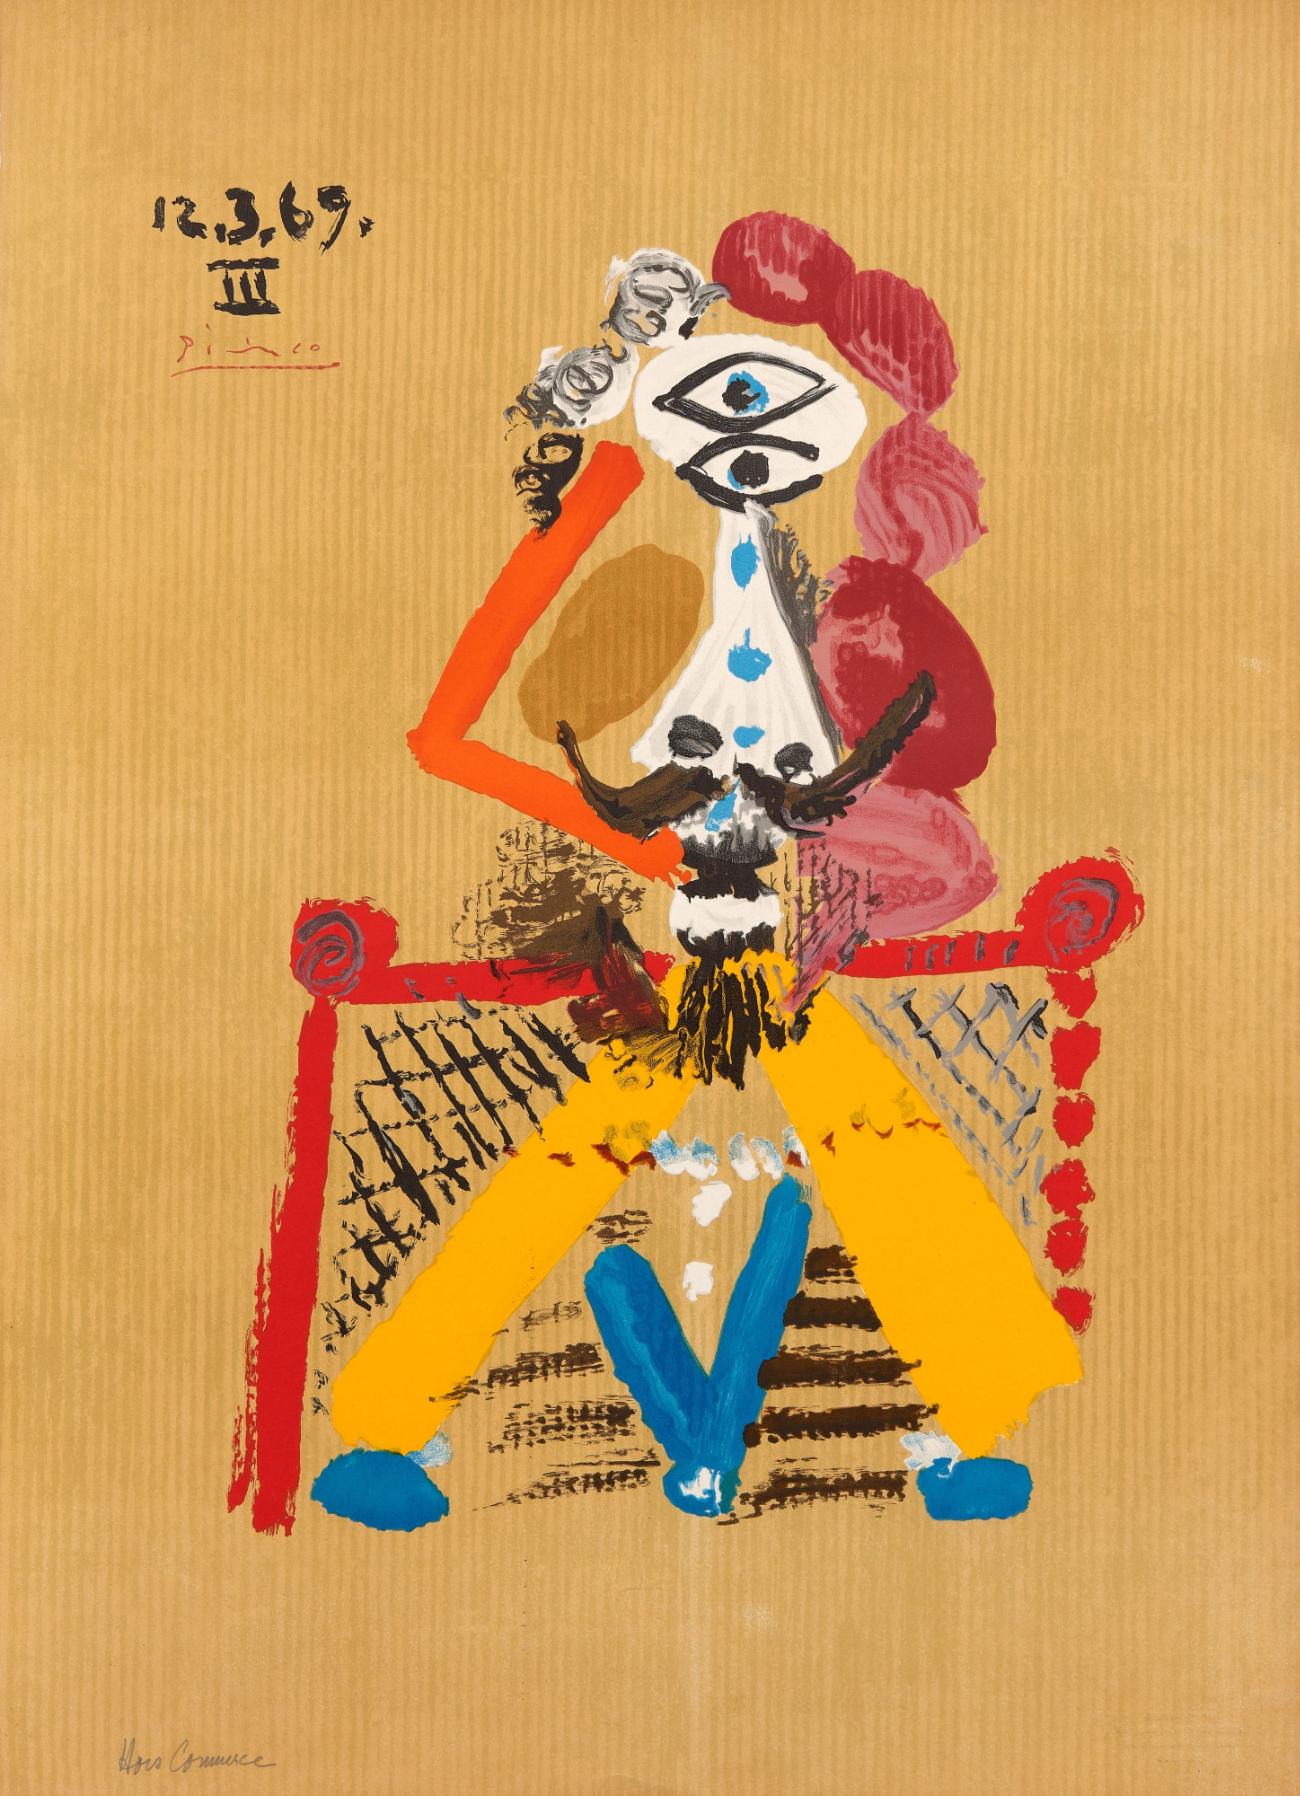 Abstract Print Pablo Picasso - Les portraits imaginaires : une assiette